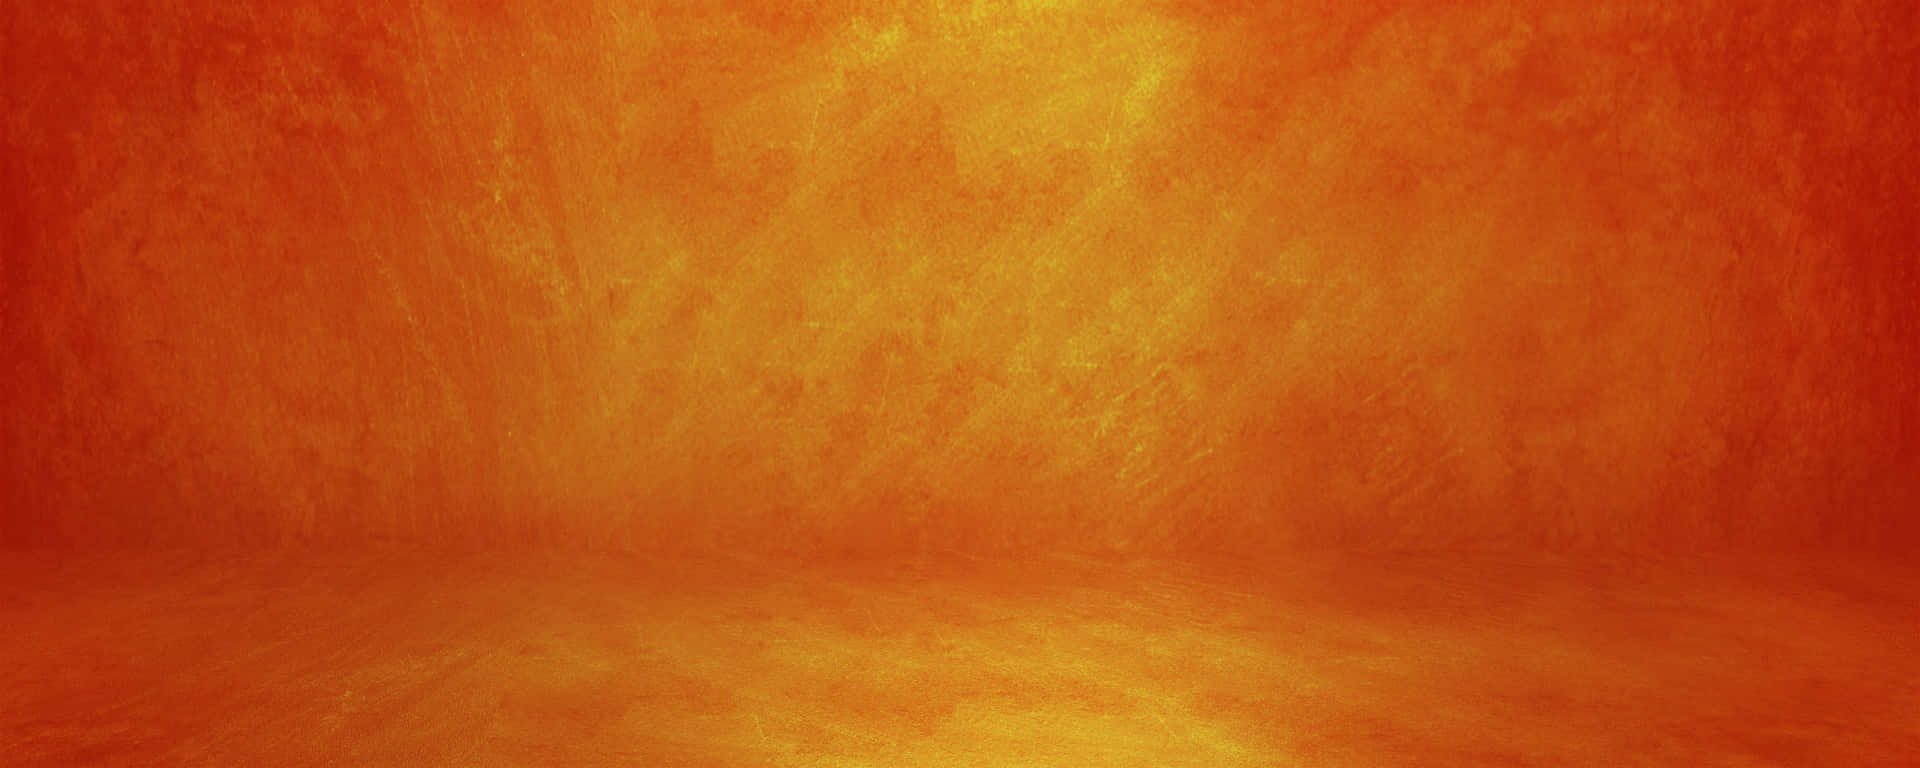 Burnt Orange Yellow Background Reflection